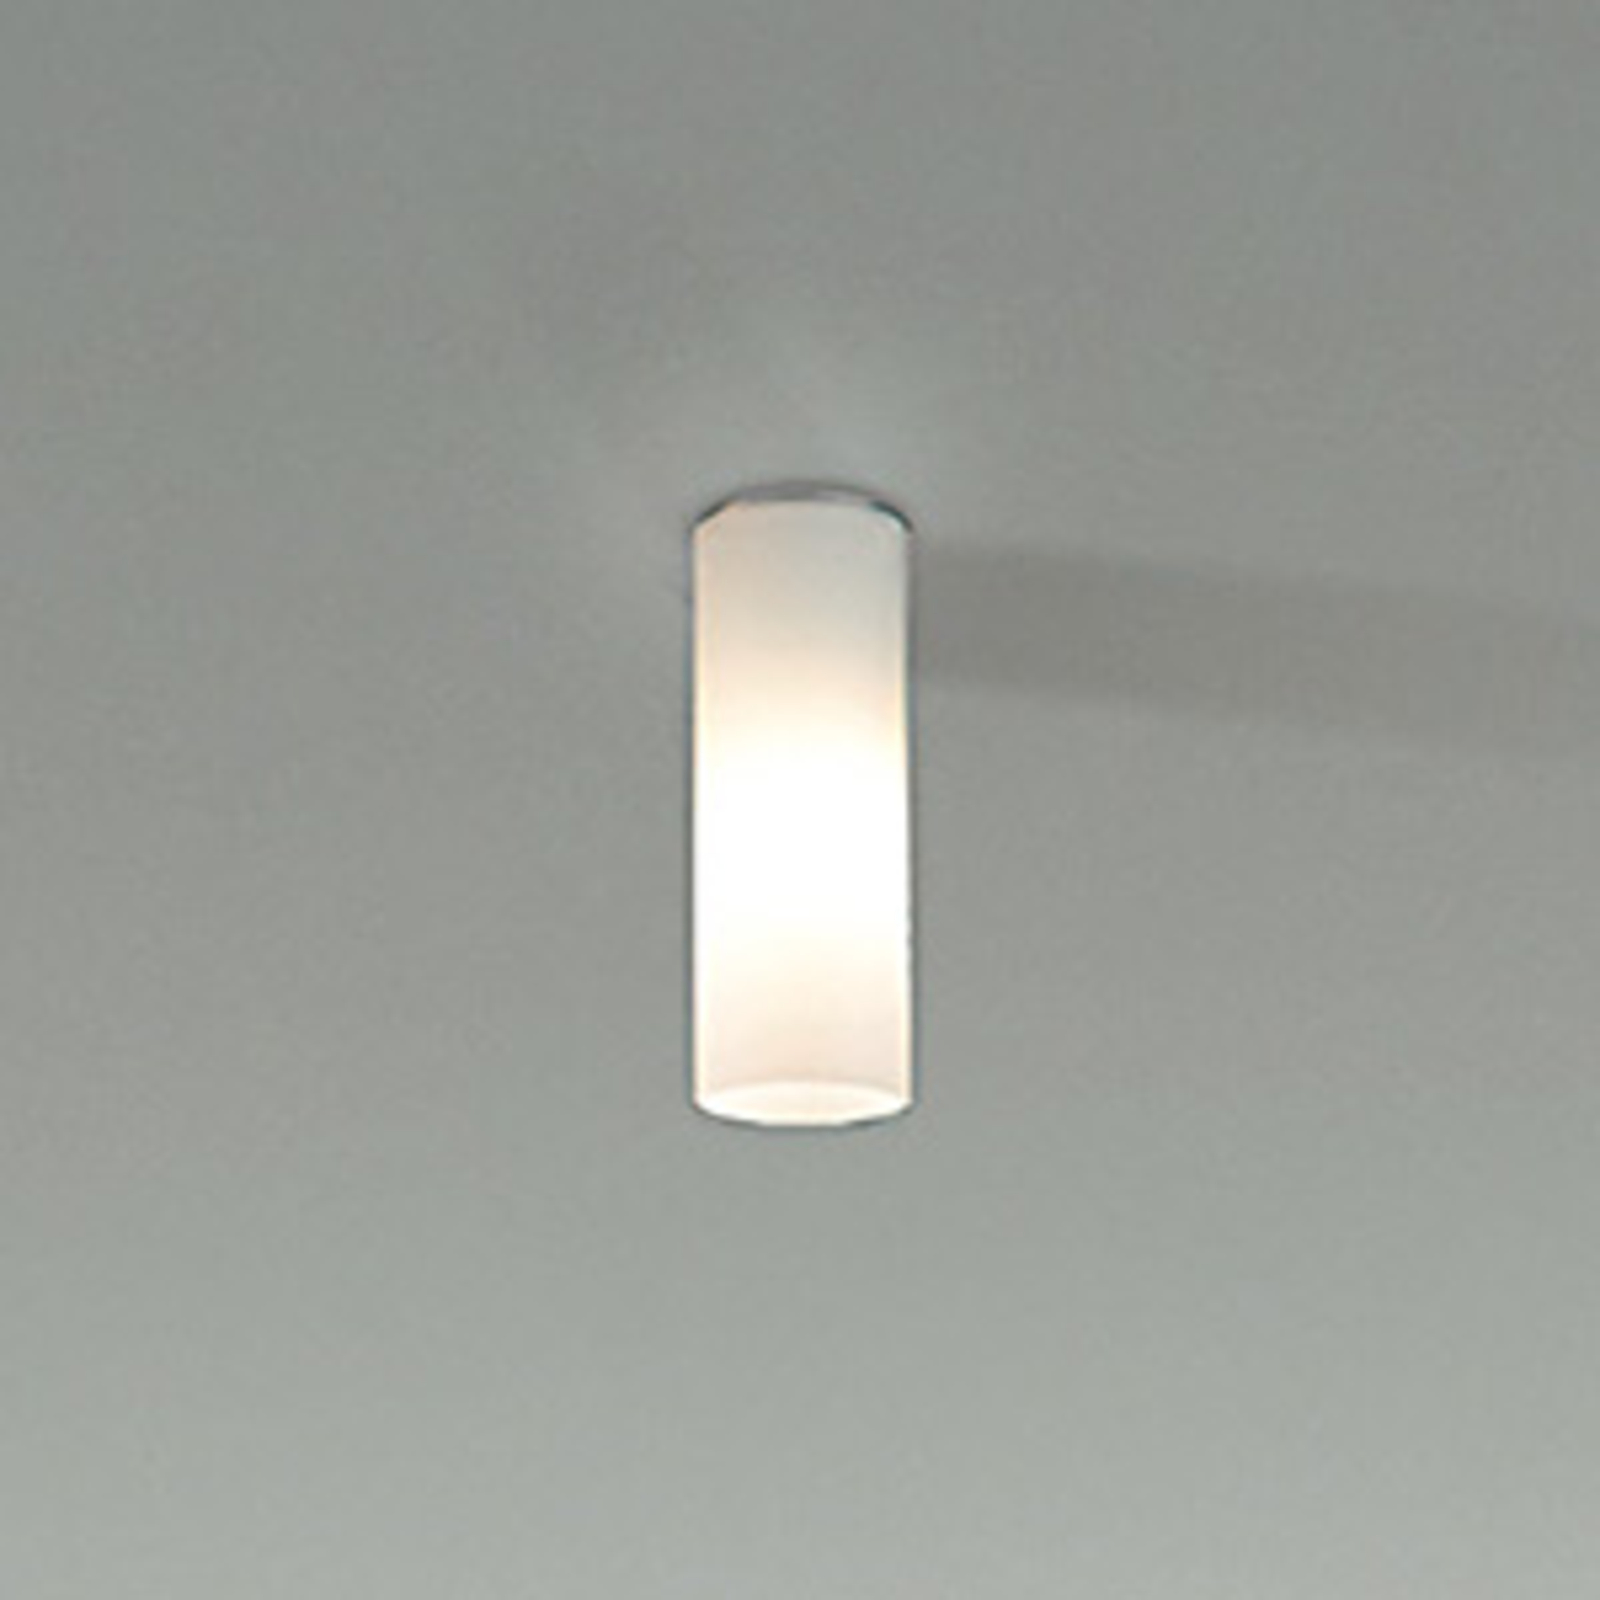 Dela ceiling light, E27, white, glass, Ø 6.5 cm